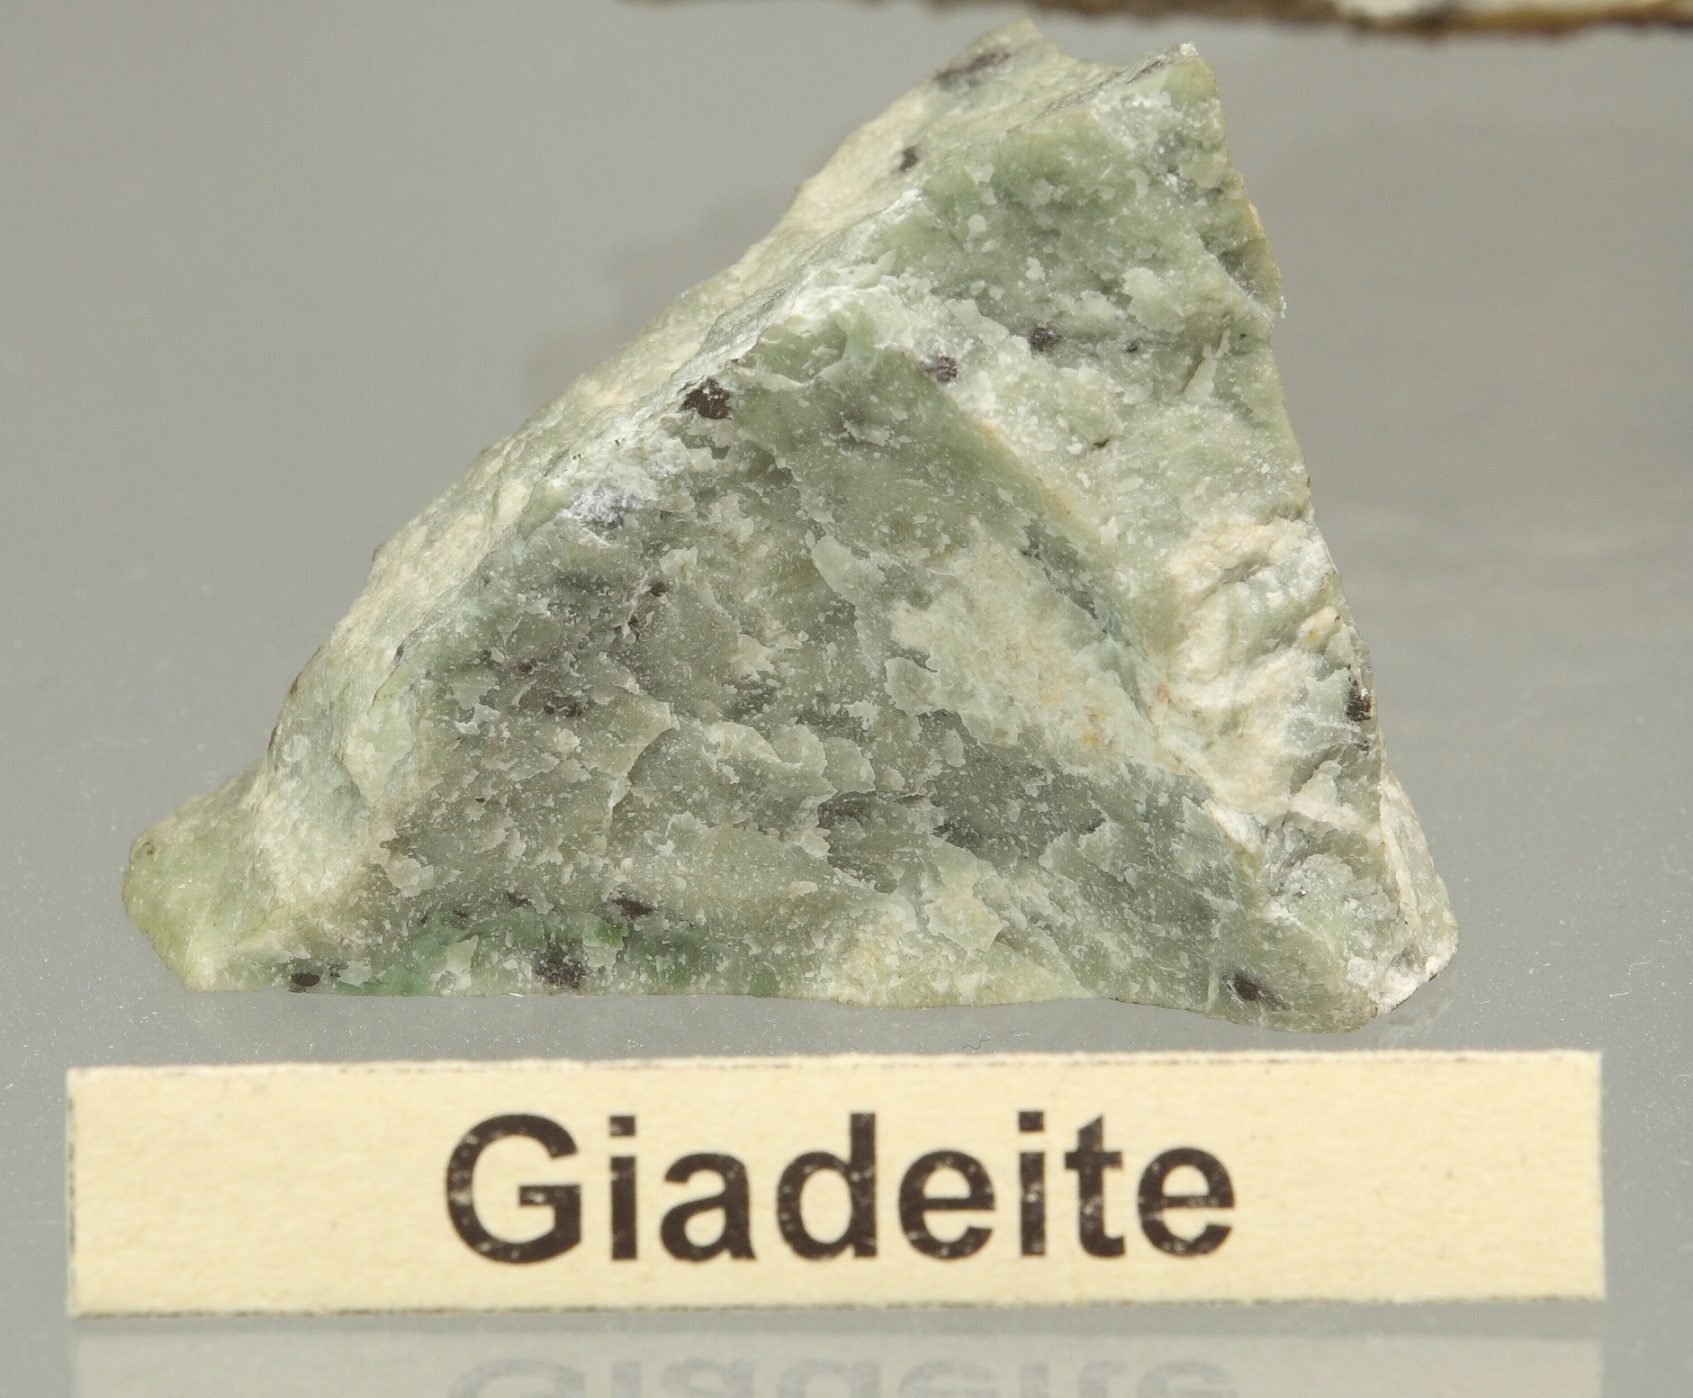 Giadeite: minerale di colore verde. La giada è costituita principalmente di giadeite.